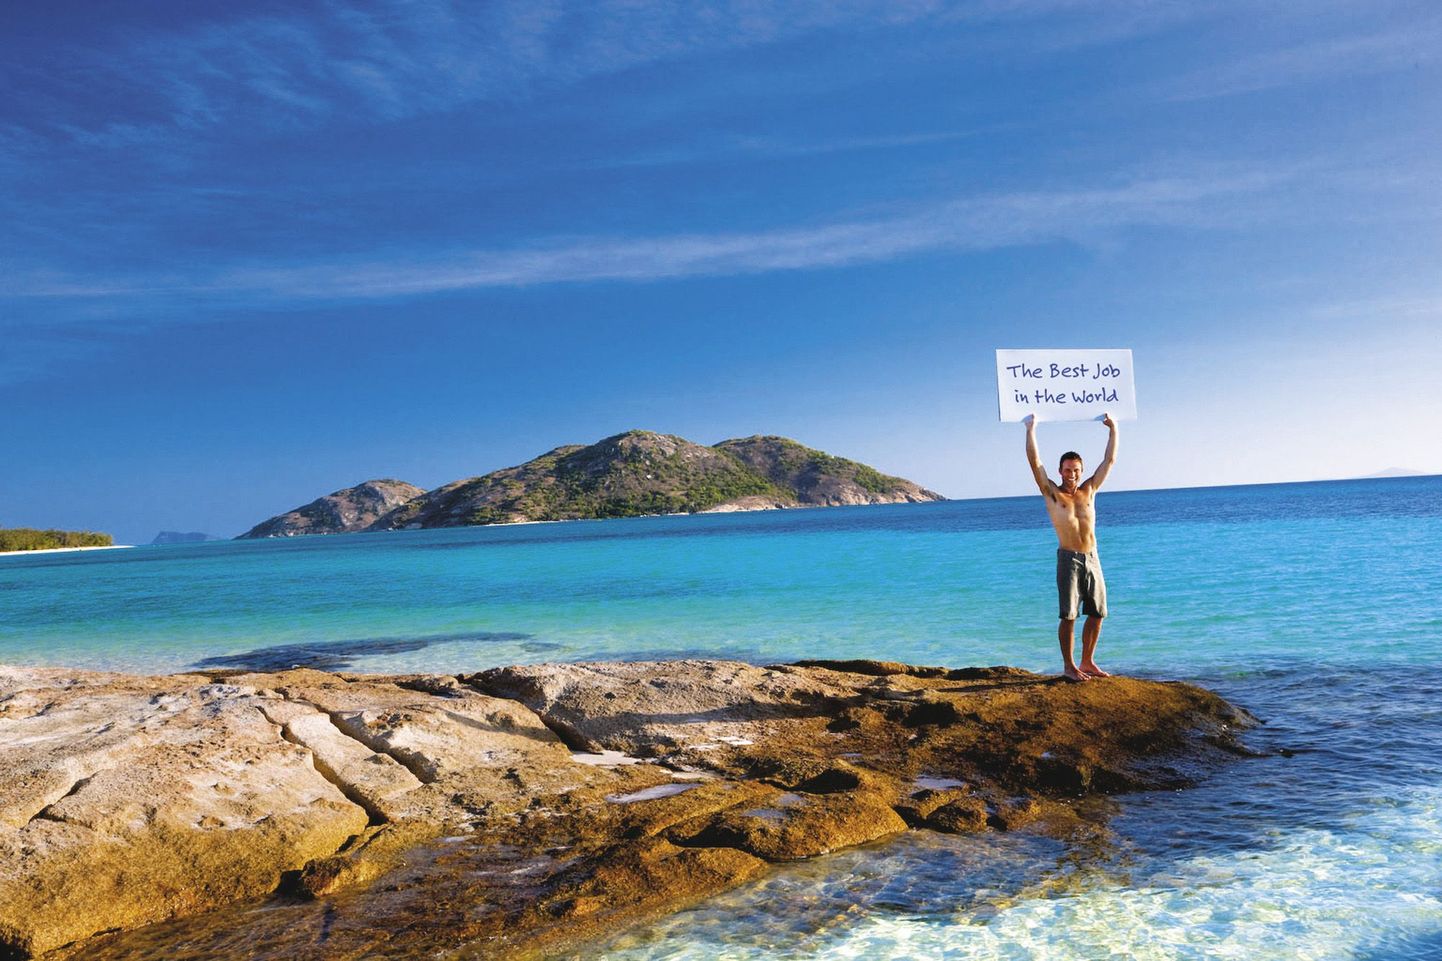 Queenslandi turismiameti reklaam «Maailma parim töökoht»